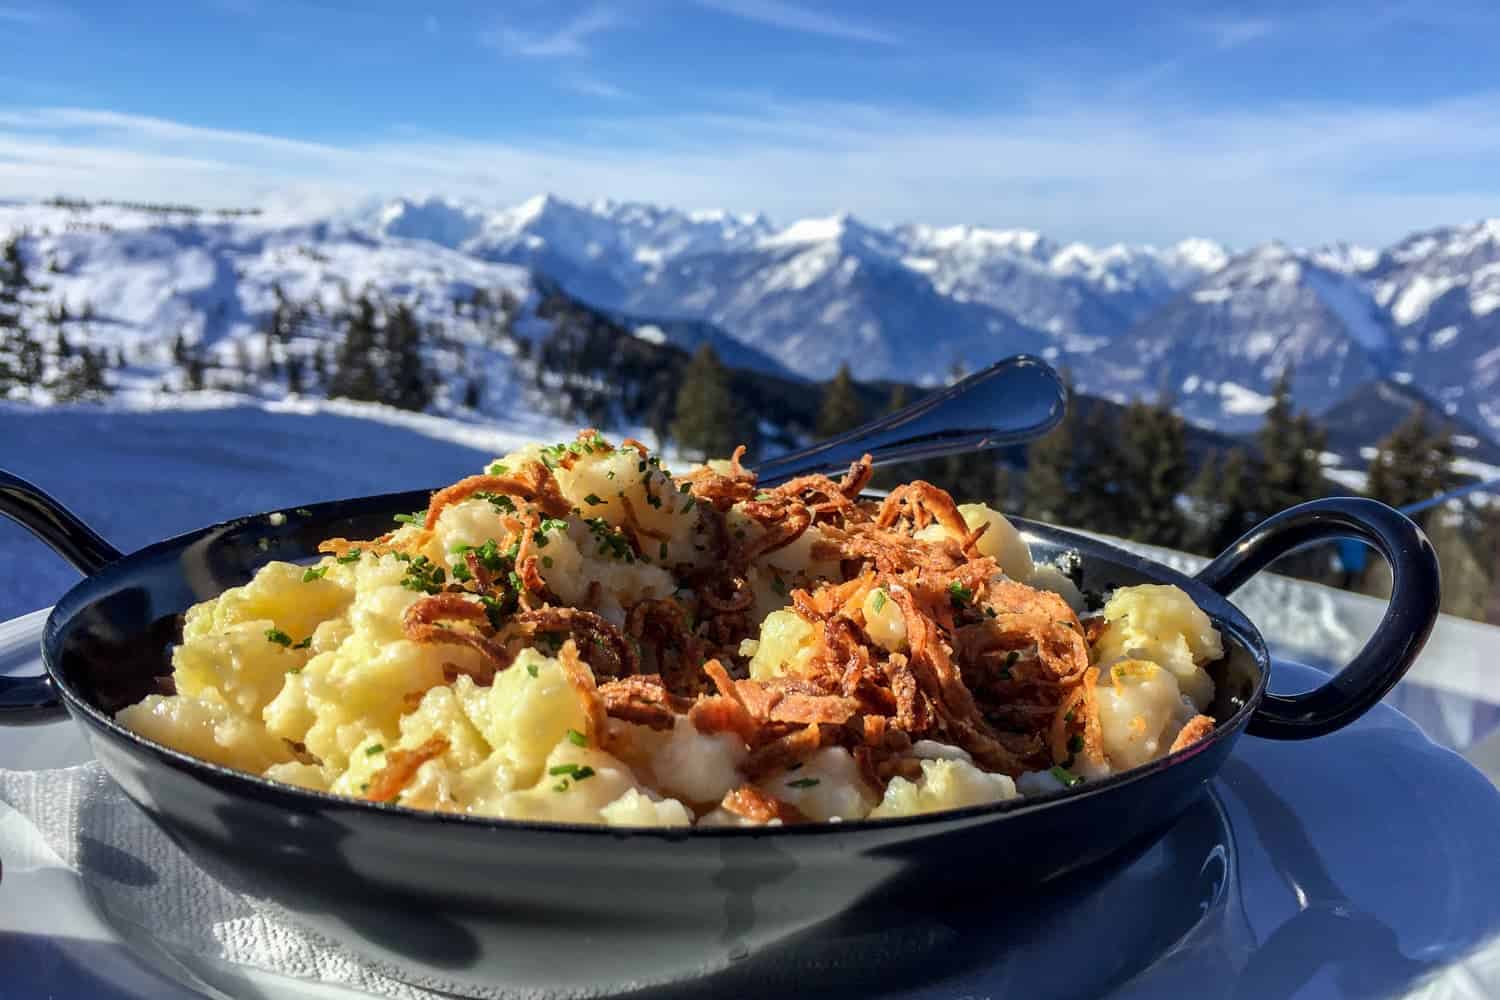 Real Tiroler Käsespätzle when skiing in Alpbachtal, Tirol, Austria